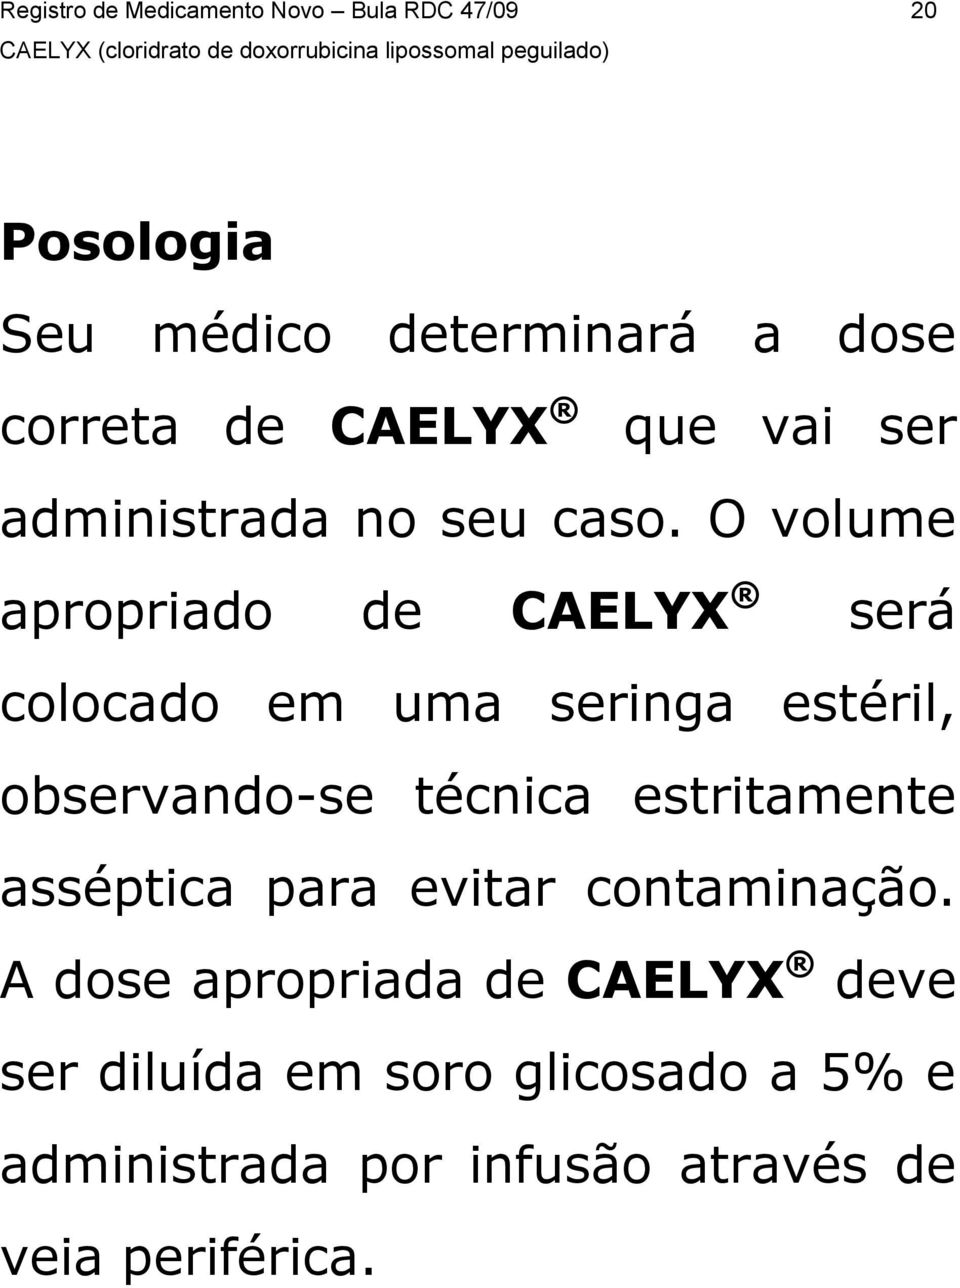 O volume apropriado de CAELYX será colocado em uma seringa estéril, observando-se técnica